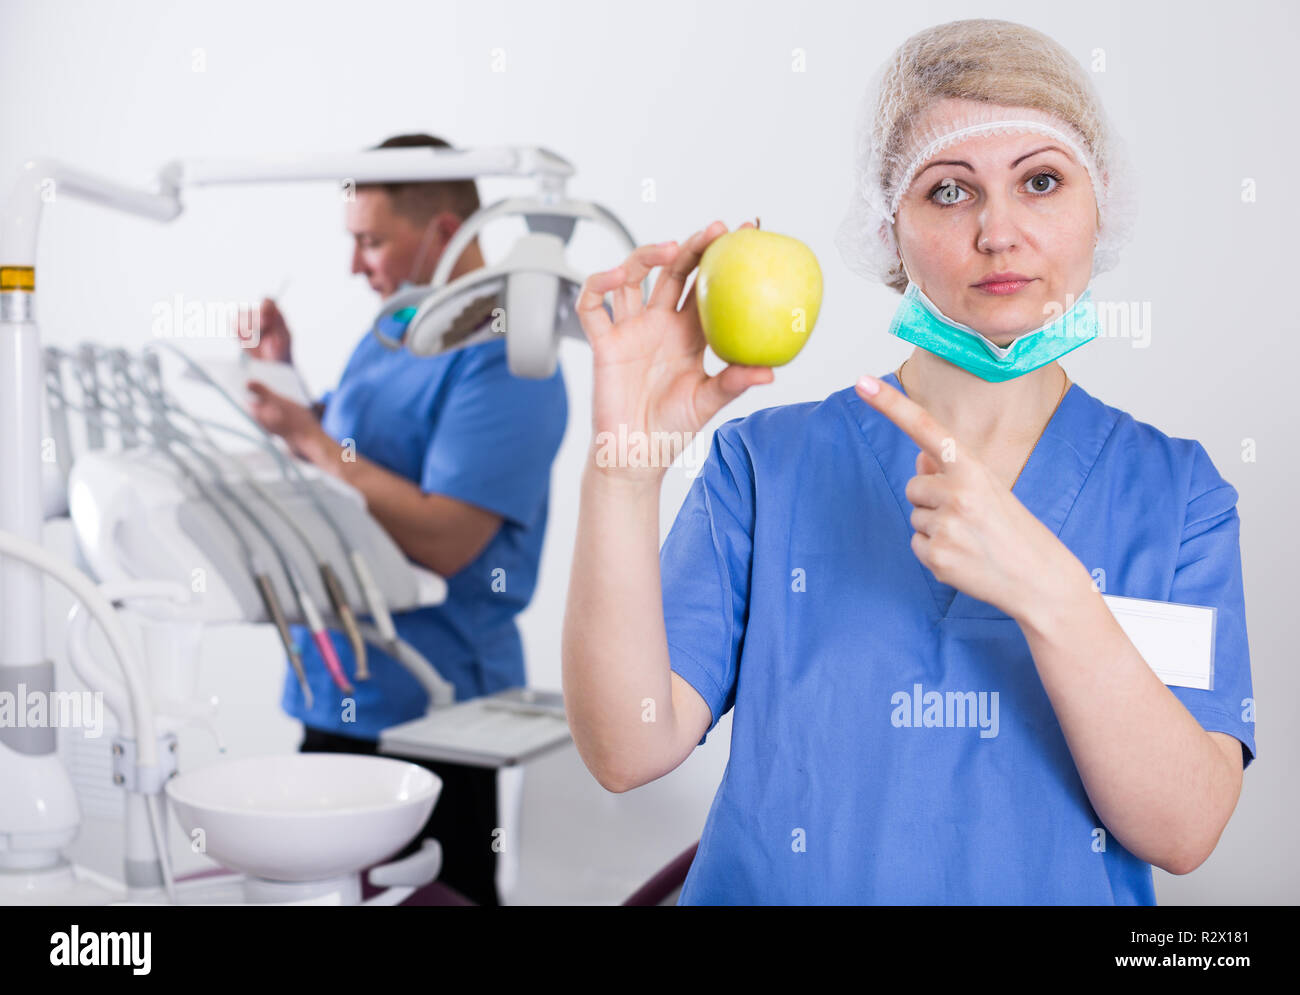 Professionelle Frau Zahnarzt auf gelber Apfel in der Hand beim Stehen in  der Zahnarztpraxis Stockfotografie - Alamy